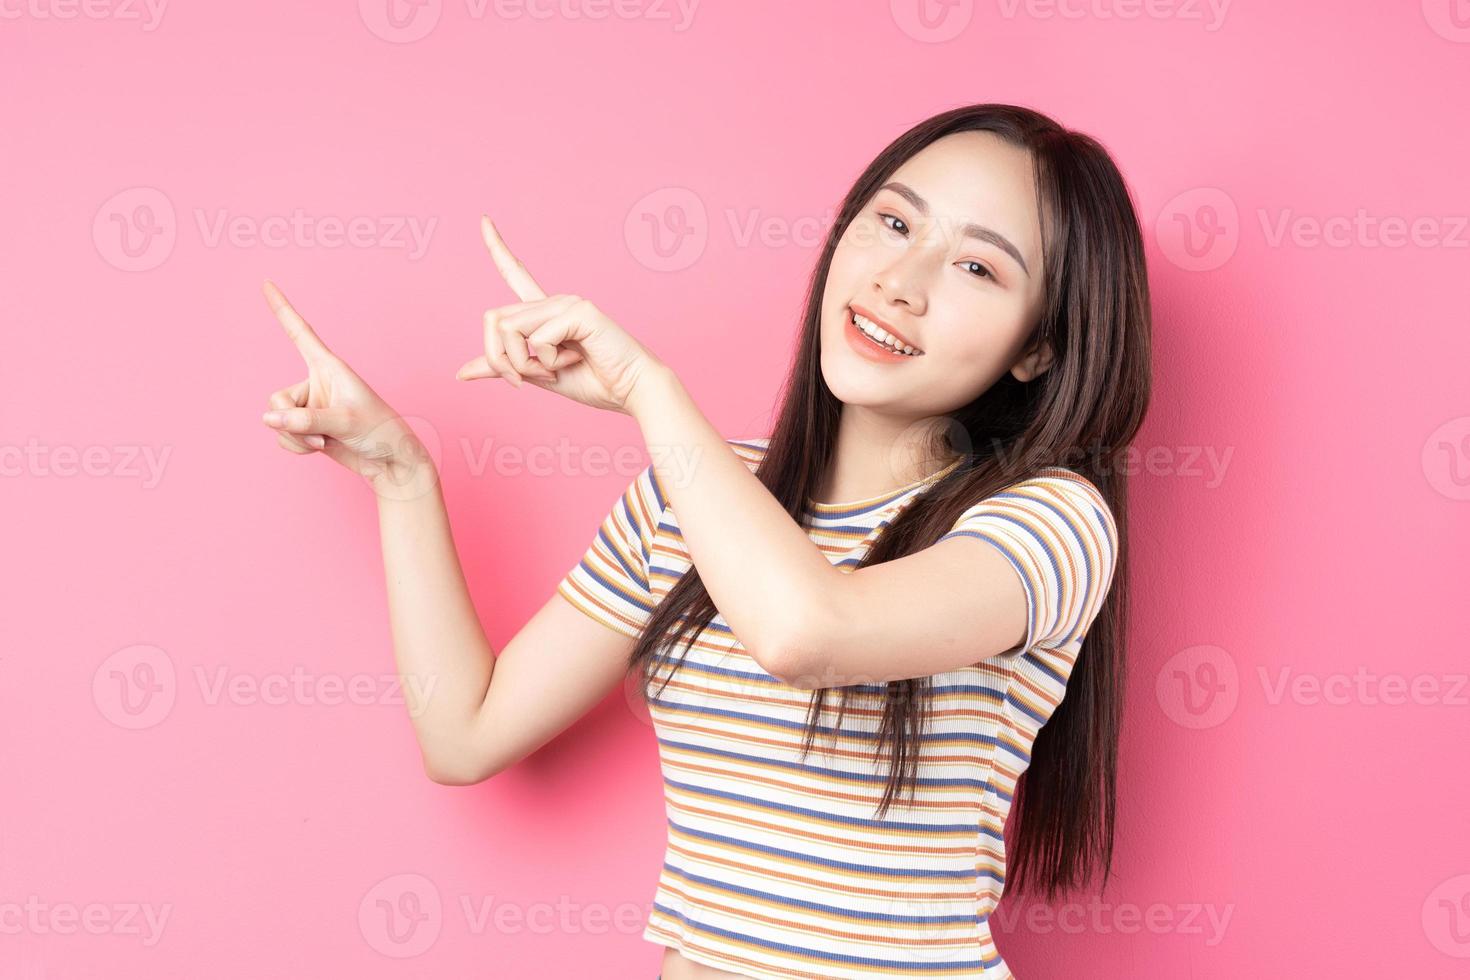 jonge aziatische vrouw die zich voordeed op roze achtergrond foto